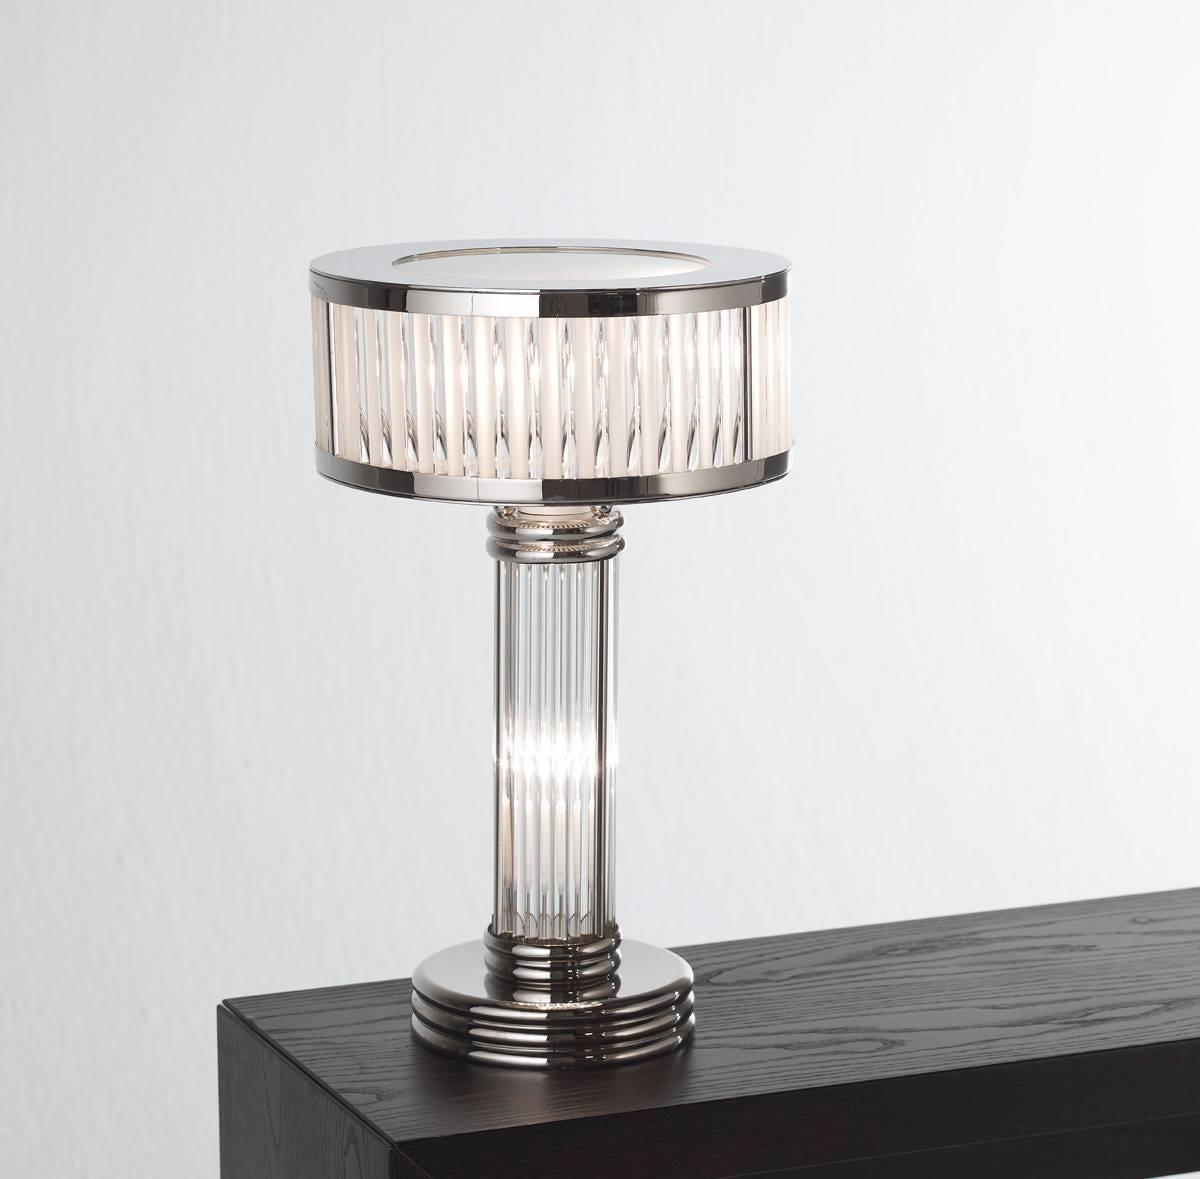 Art Deco Tischlampe mit Nickeloberfläche und Glasstäben.